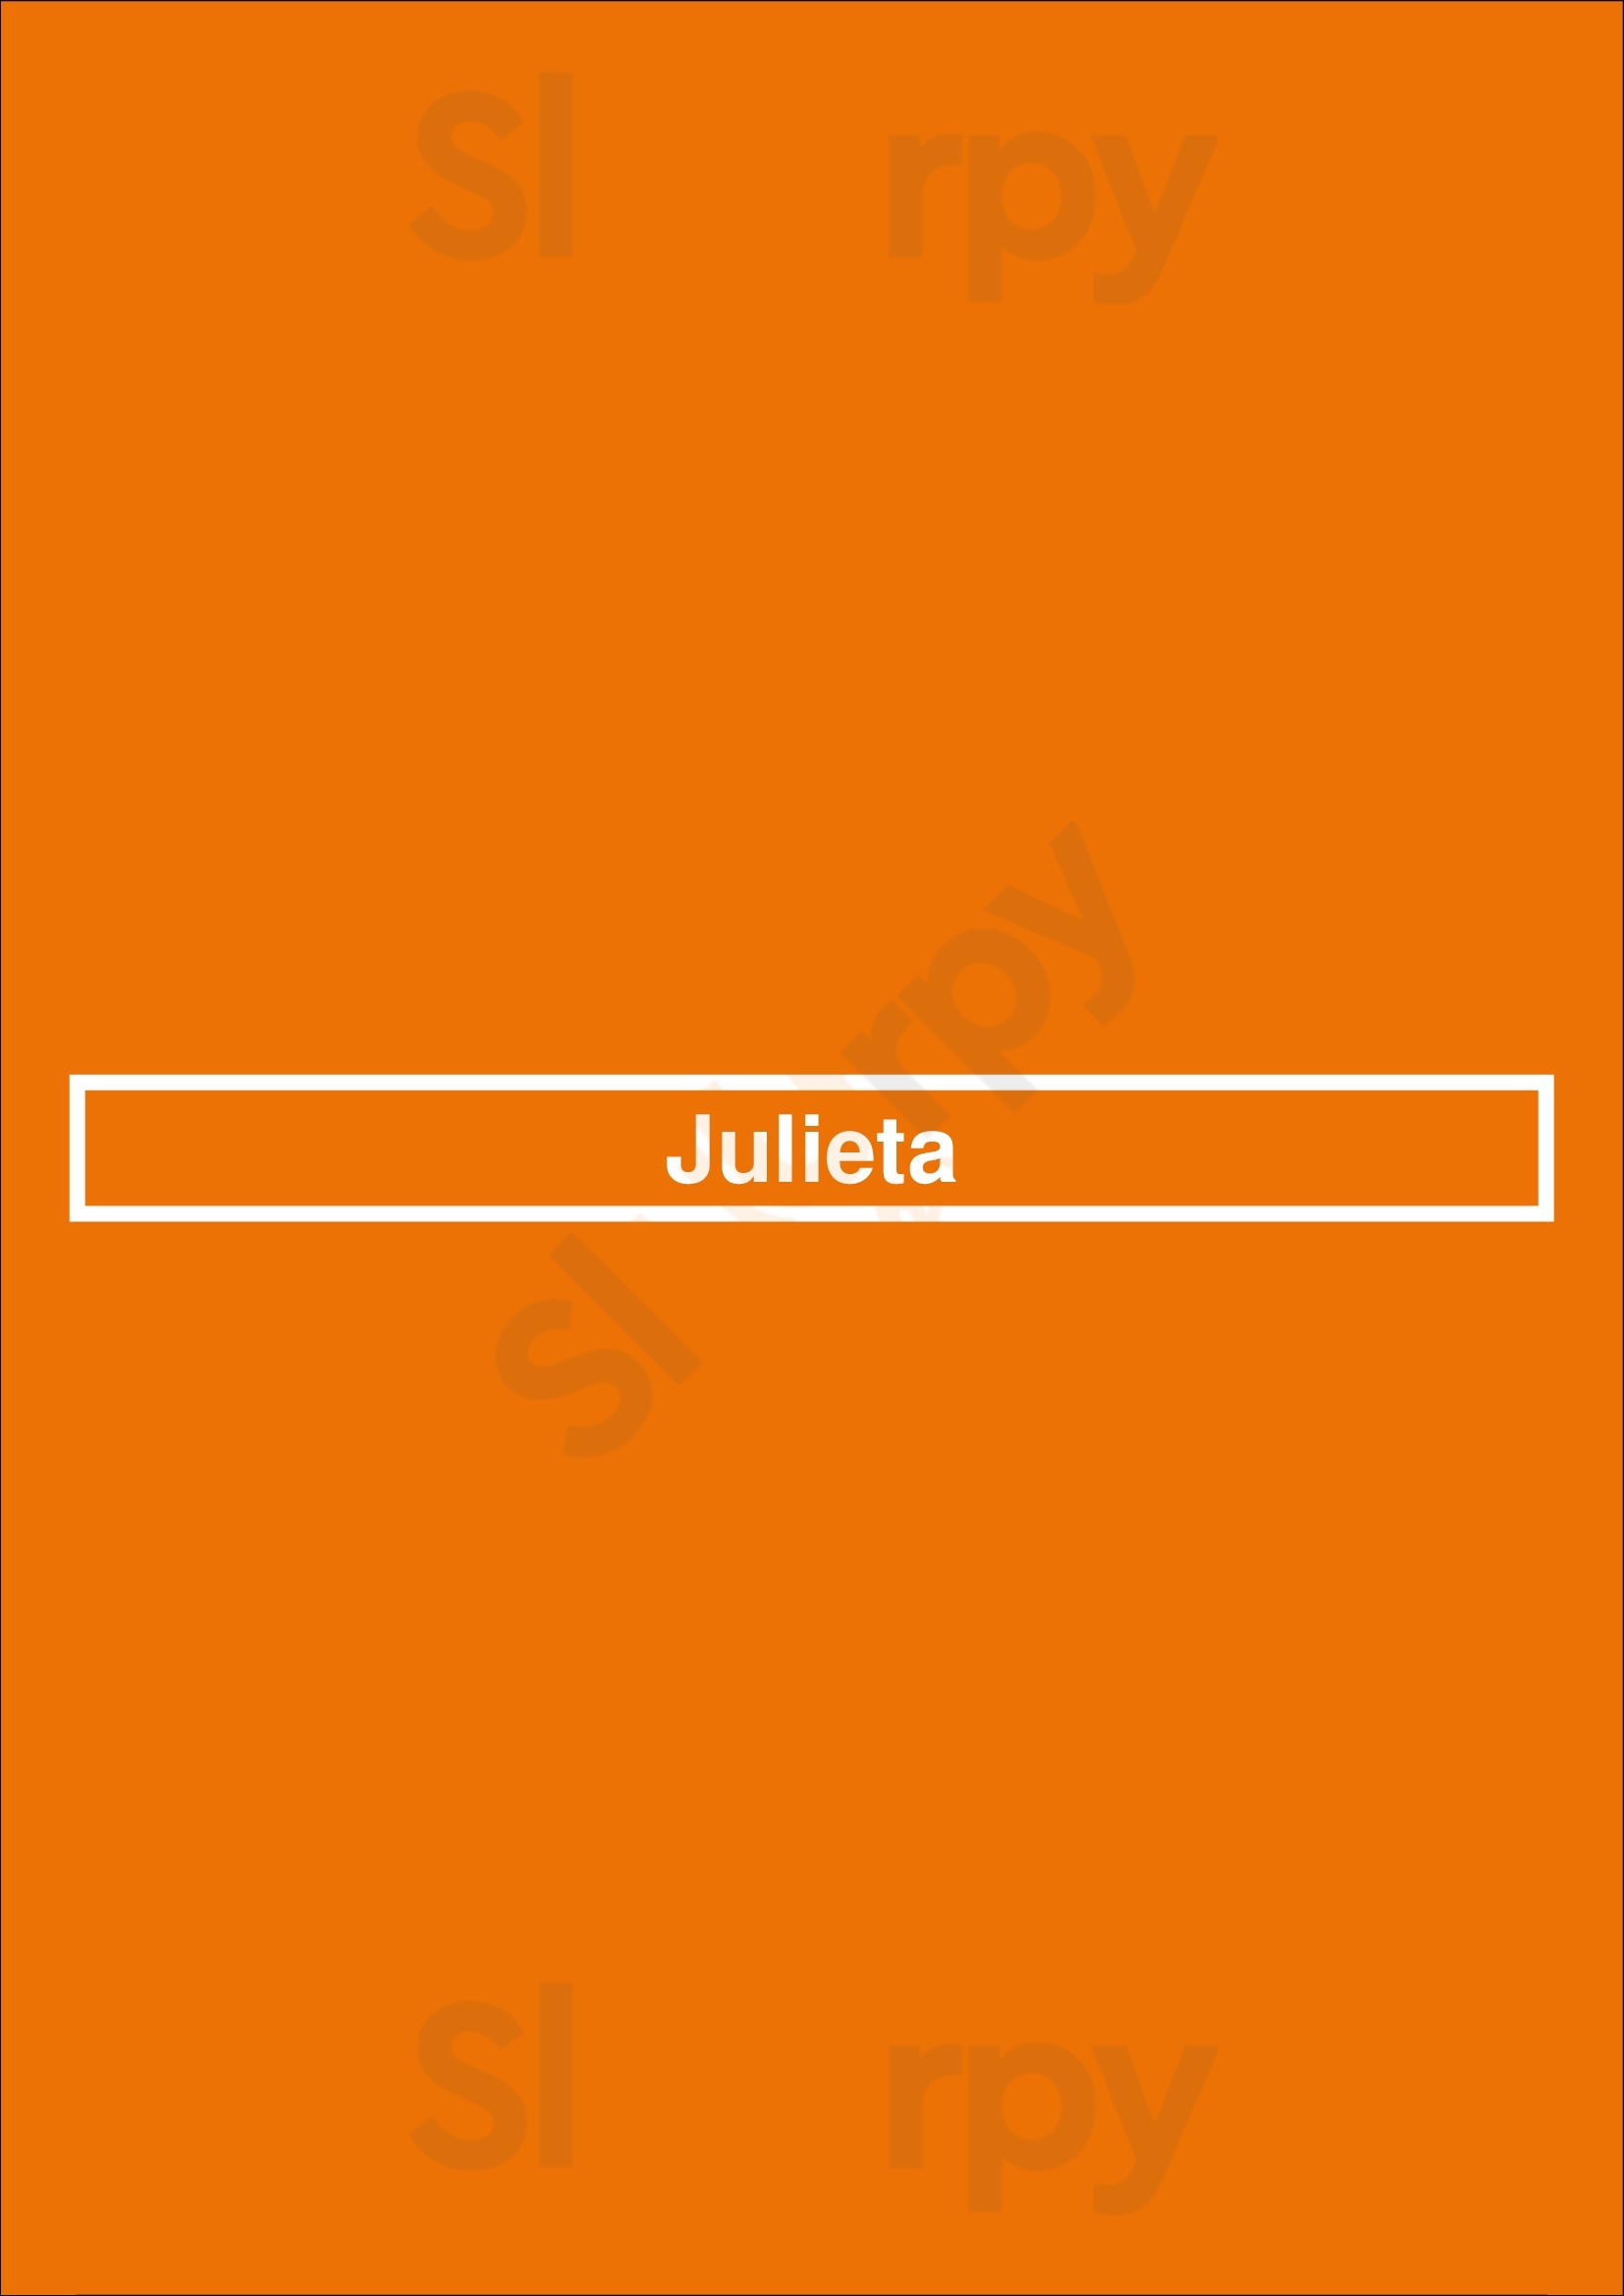 Julieta Den Haag Menu - 1